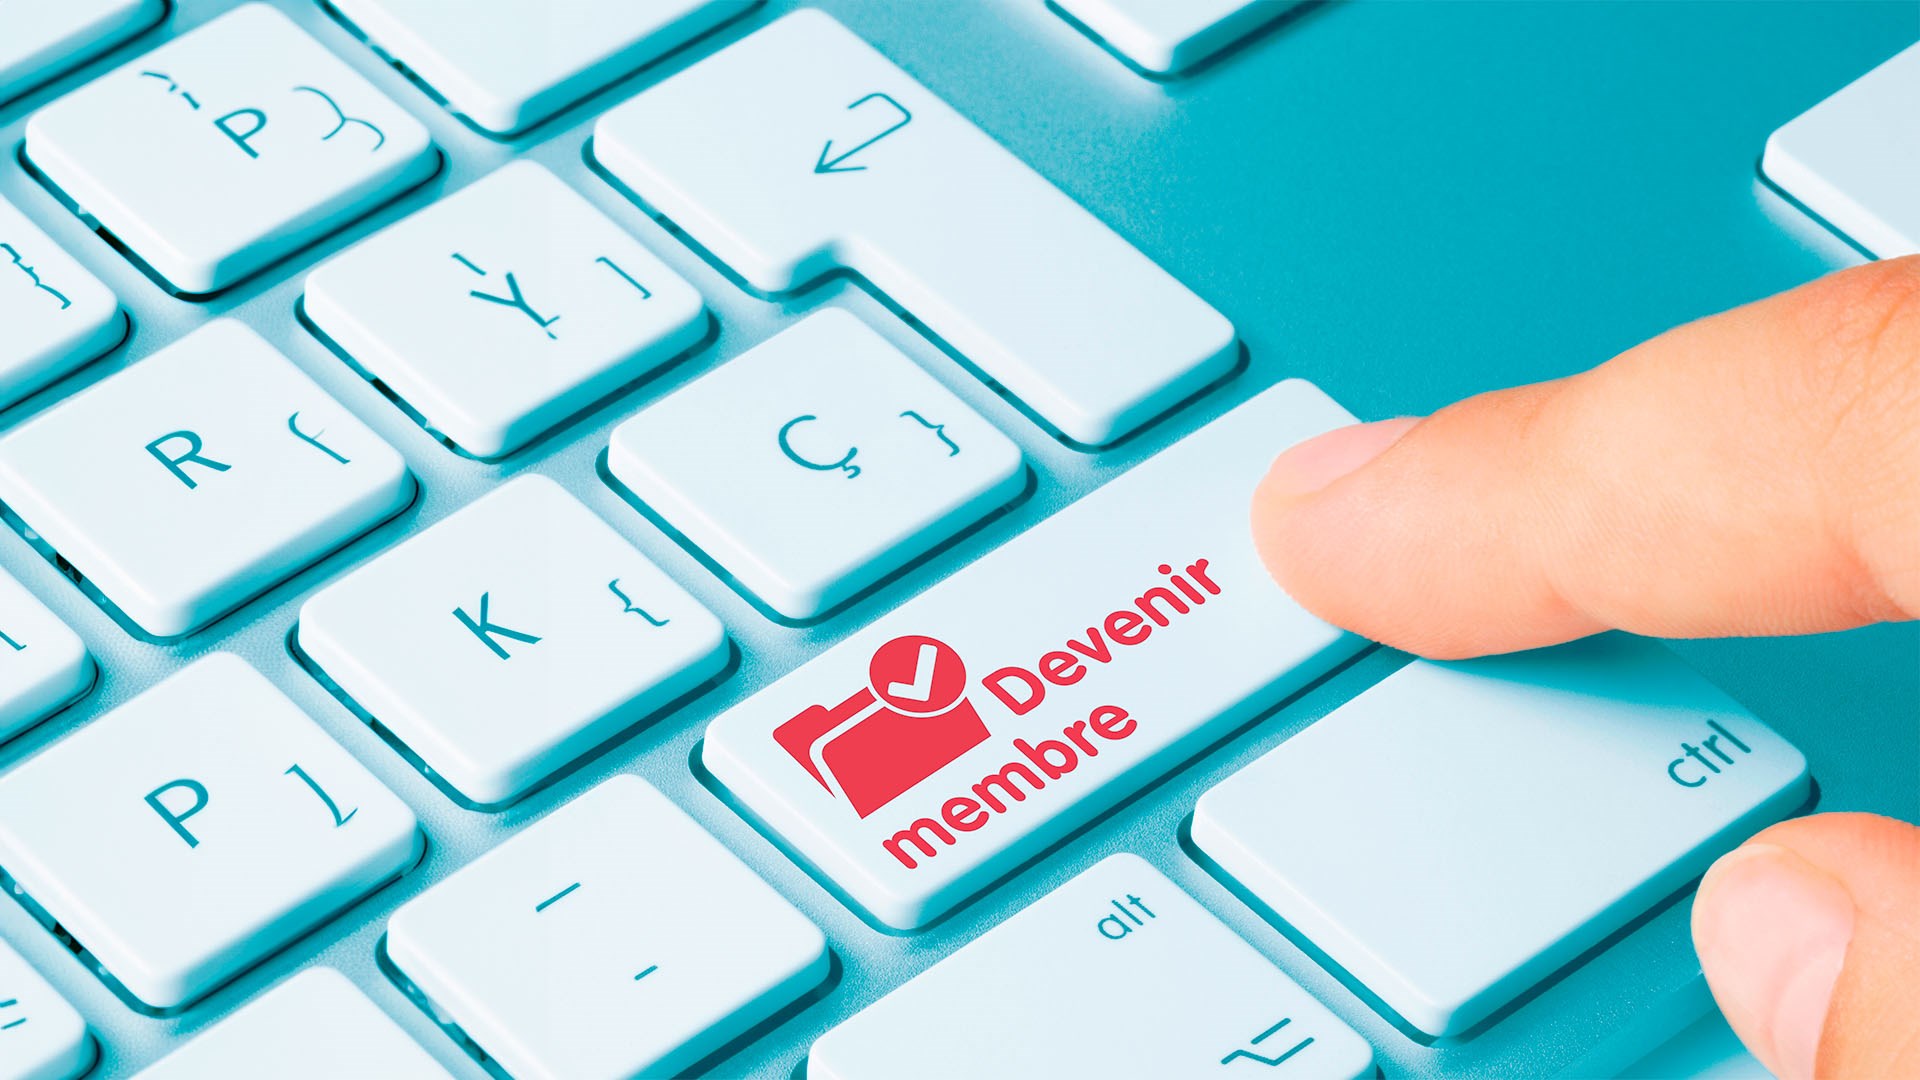 Image d'un clavier avec un doigt qui pèse un bouton rouge "Devenir membre"